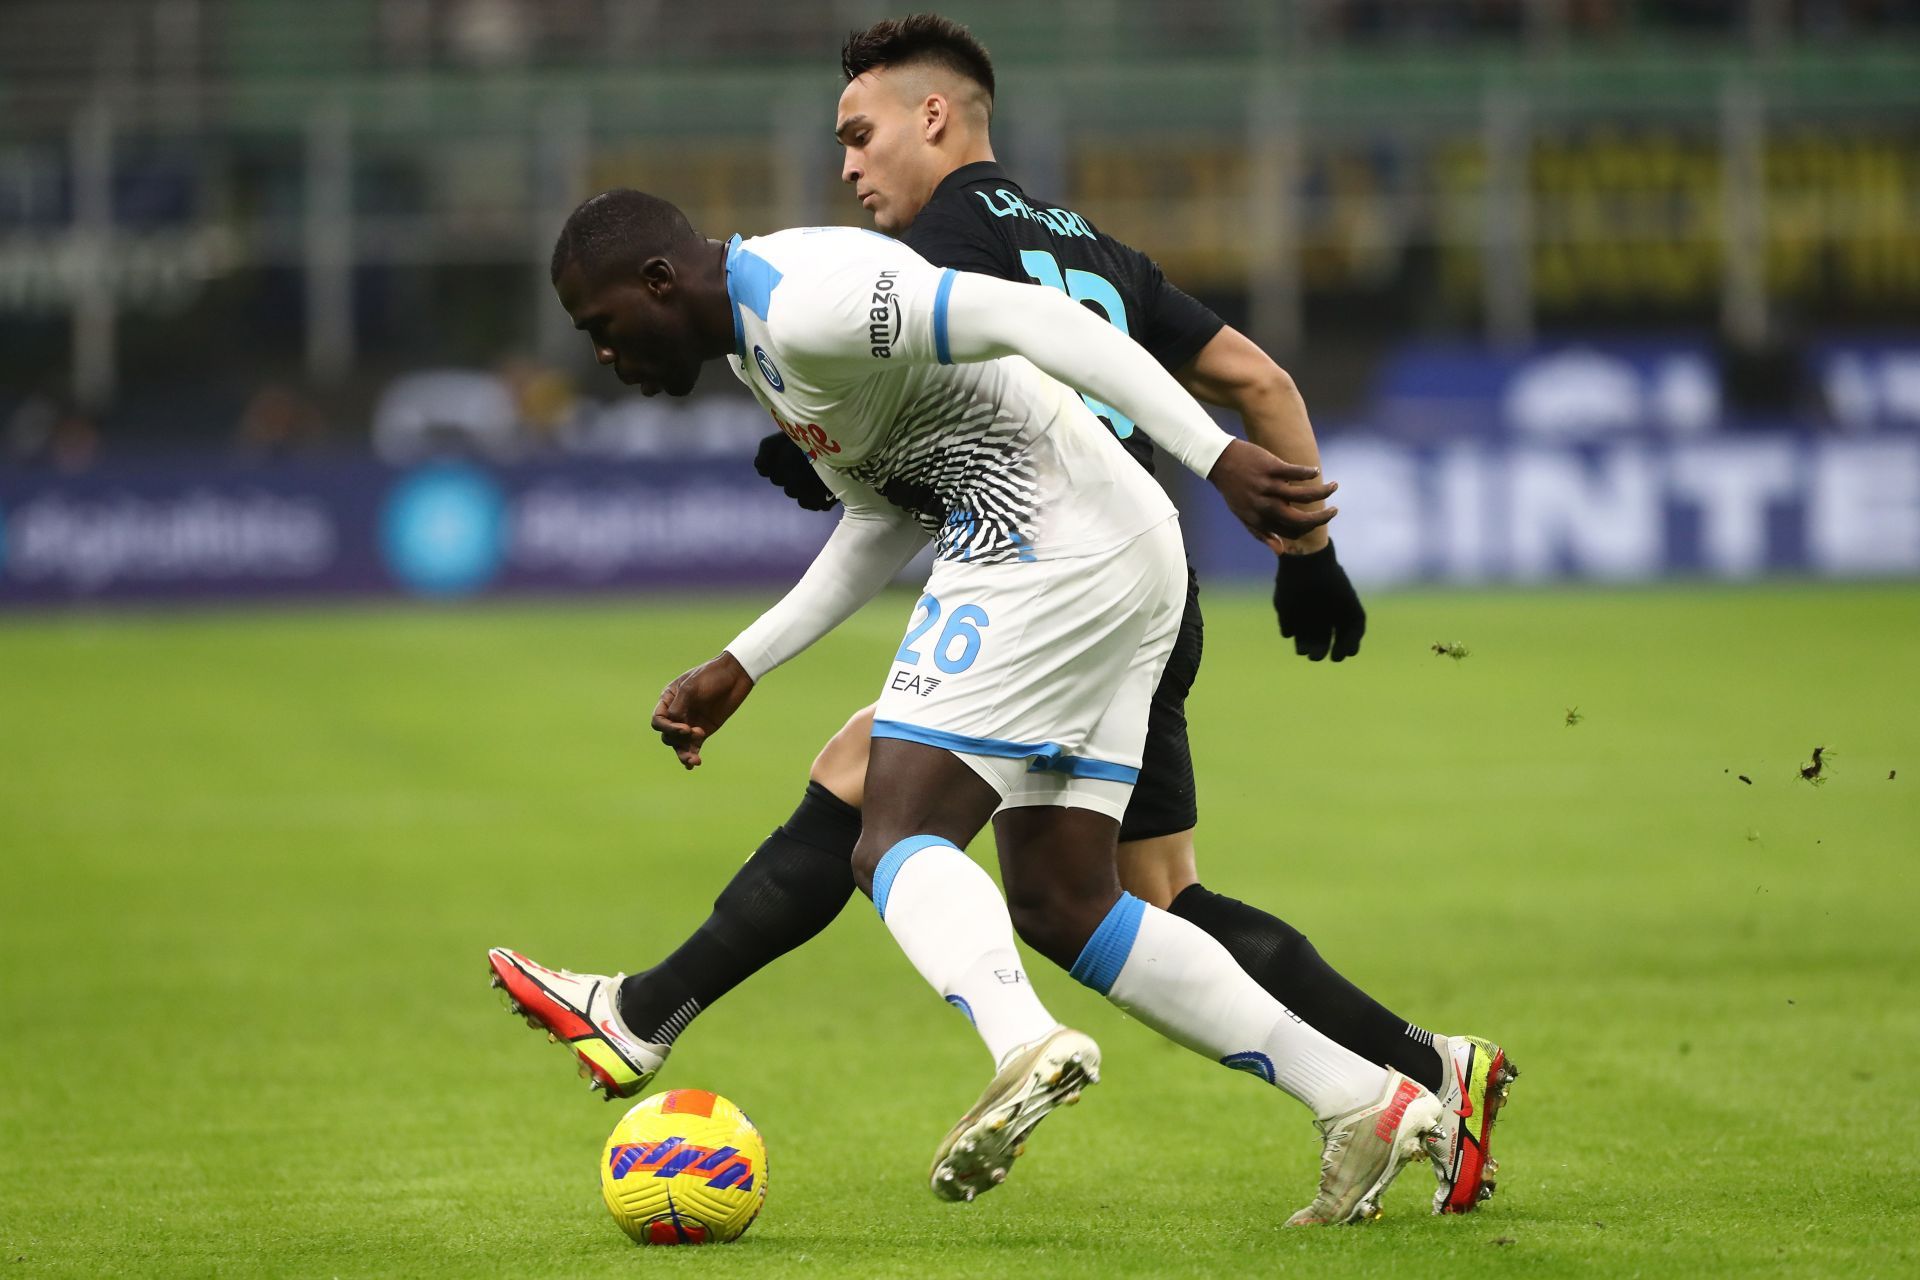 Inter Milan take on Napoli this weekend